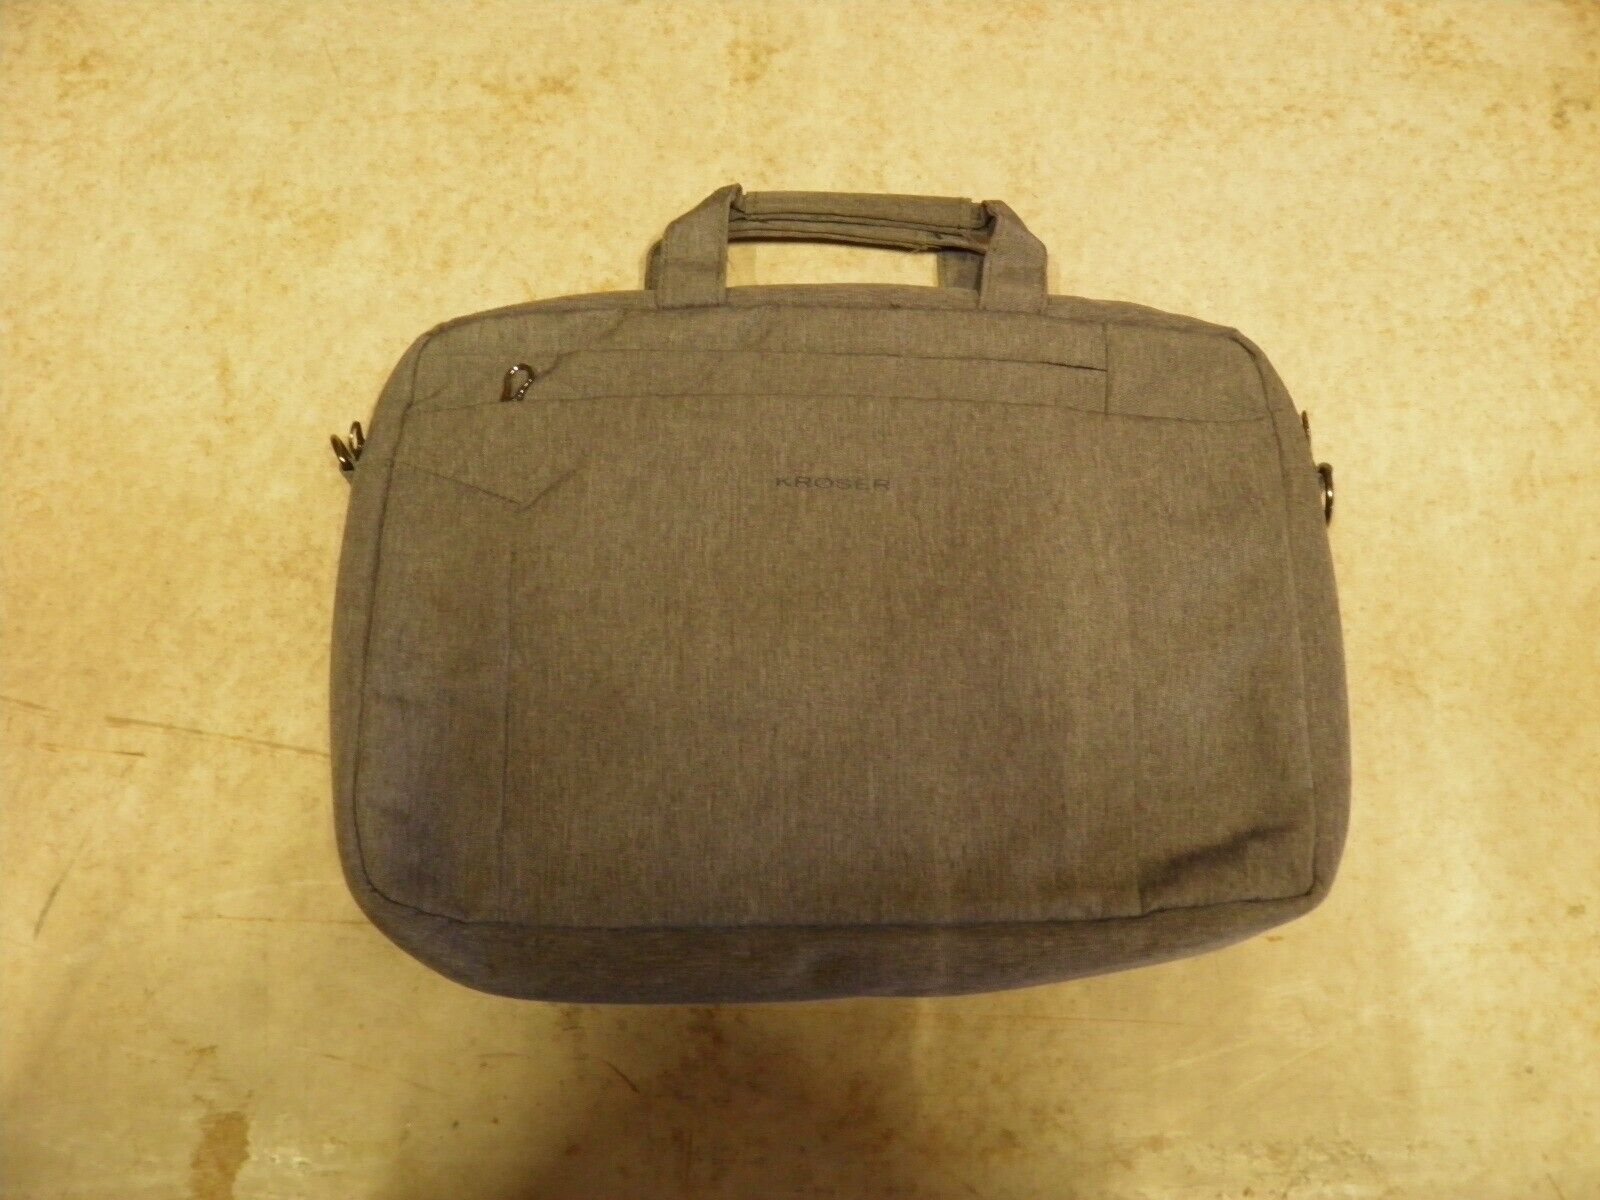  KROSER One (1) USED Laptop Bag 15.6 Inch Briefcase Shoulder Bag Great Shape